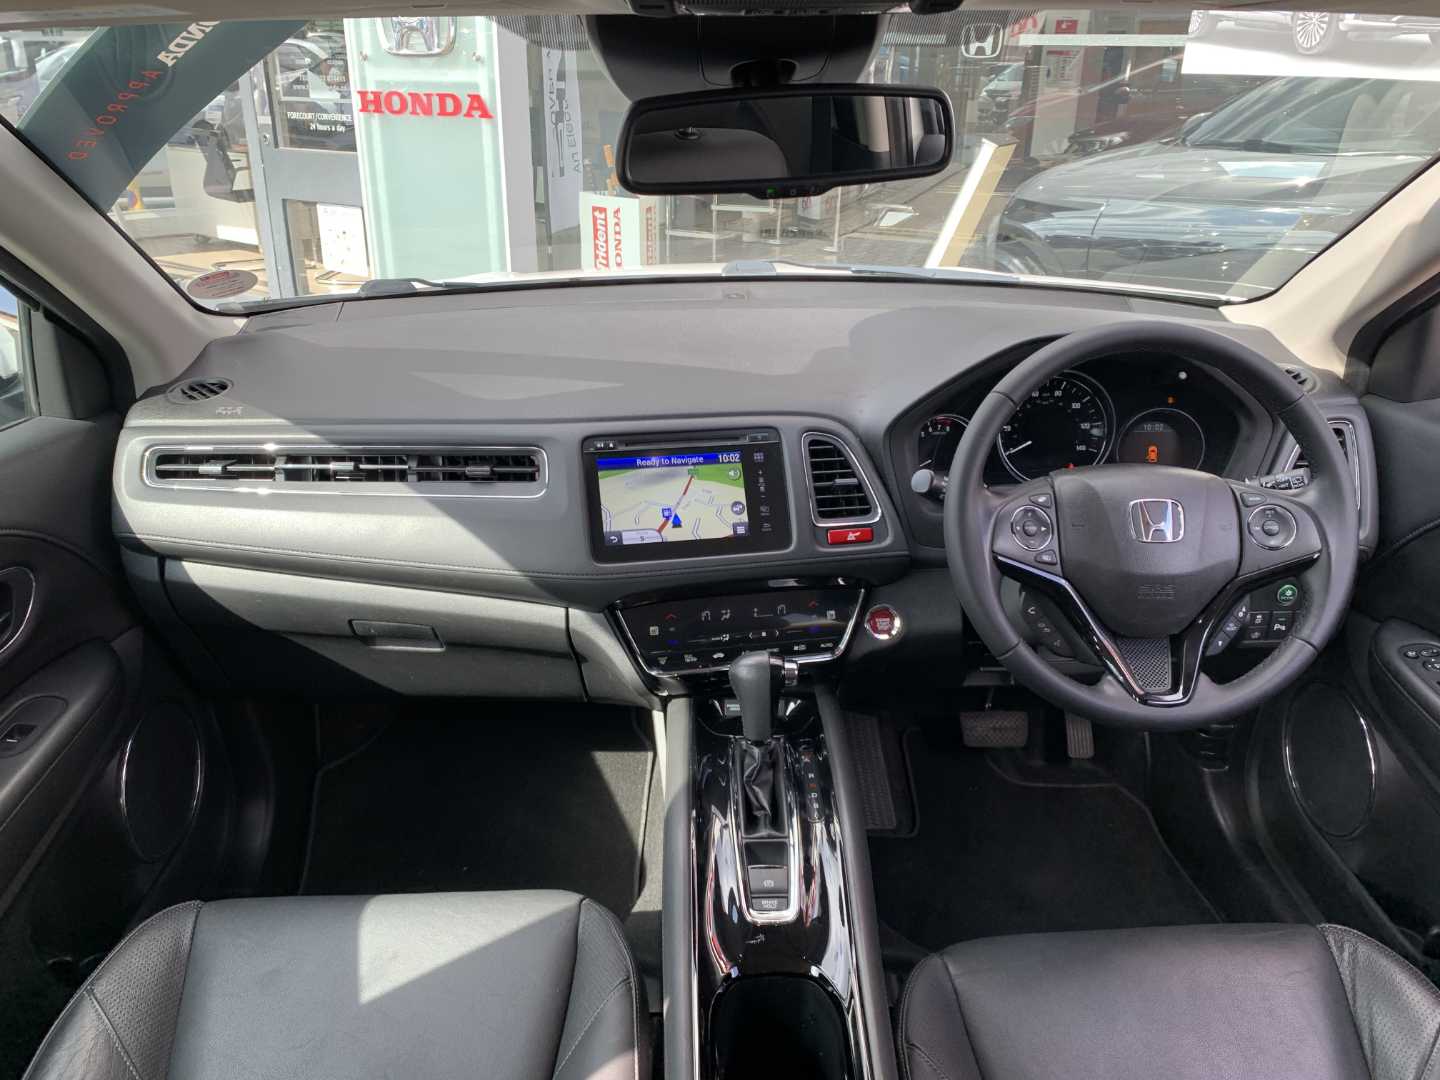 Honda HR-V 1.5 i-VTEC EX CVT 5dr - Image 4